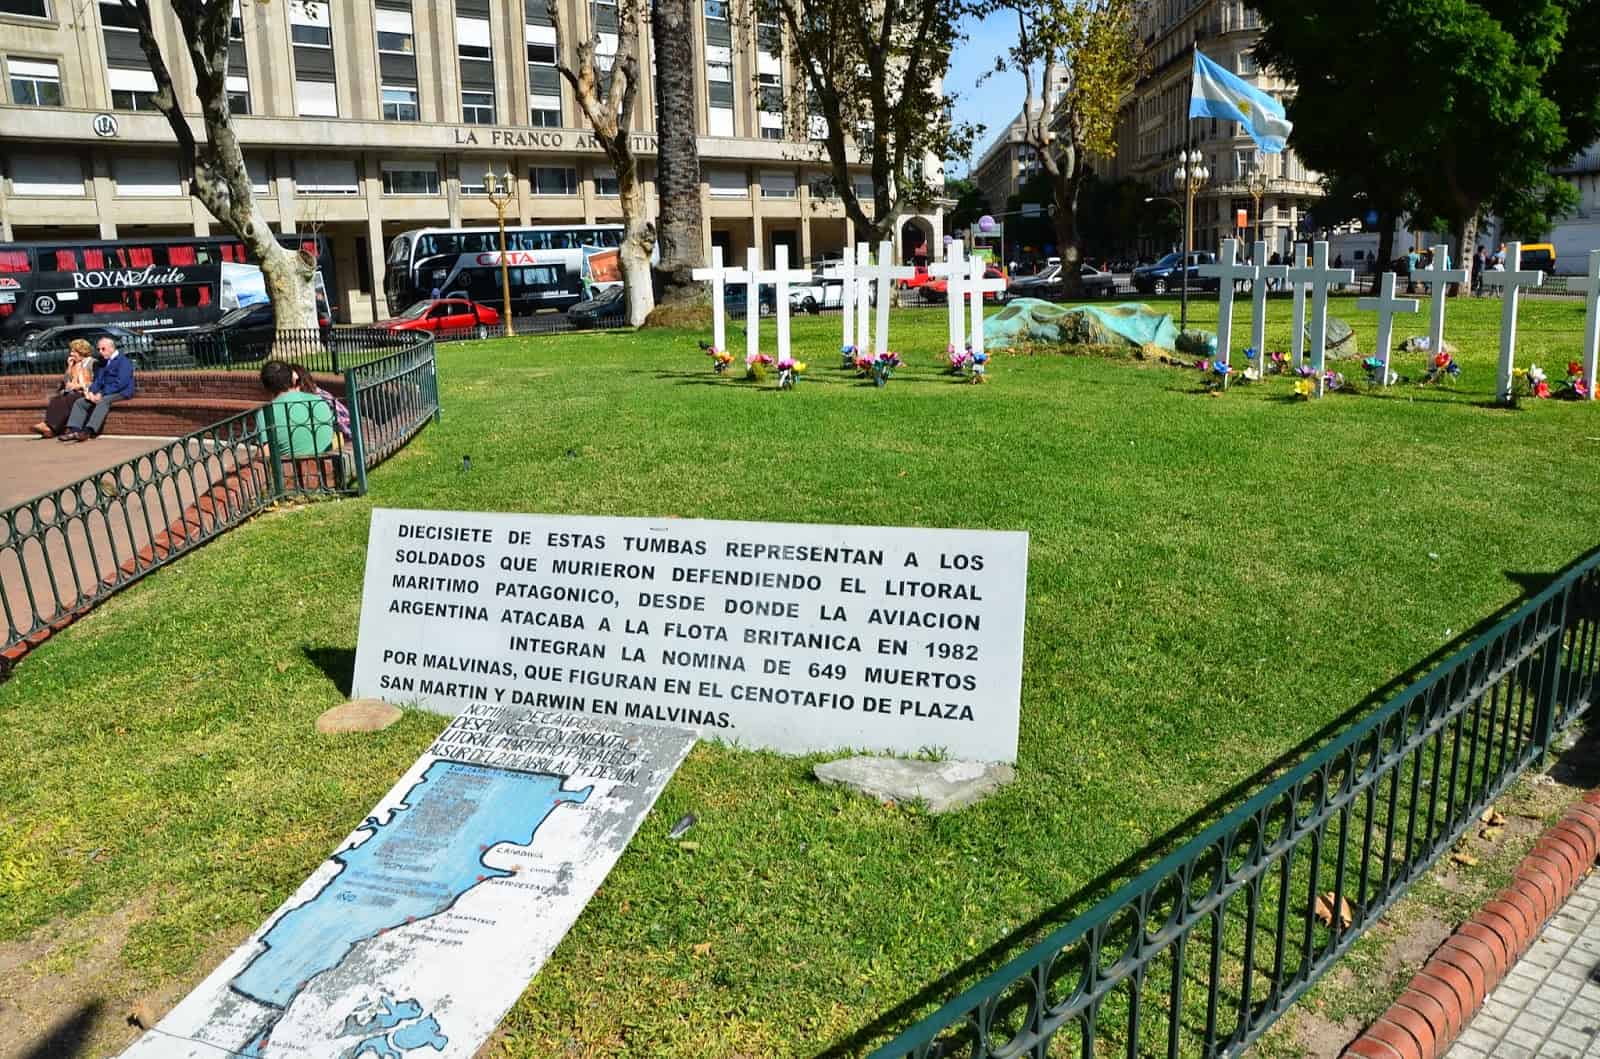 Las Malvinas memorial at Plaza de Mayo in Buenos Aires, Argentina